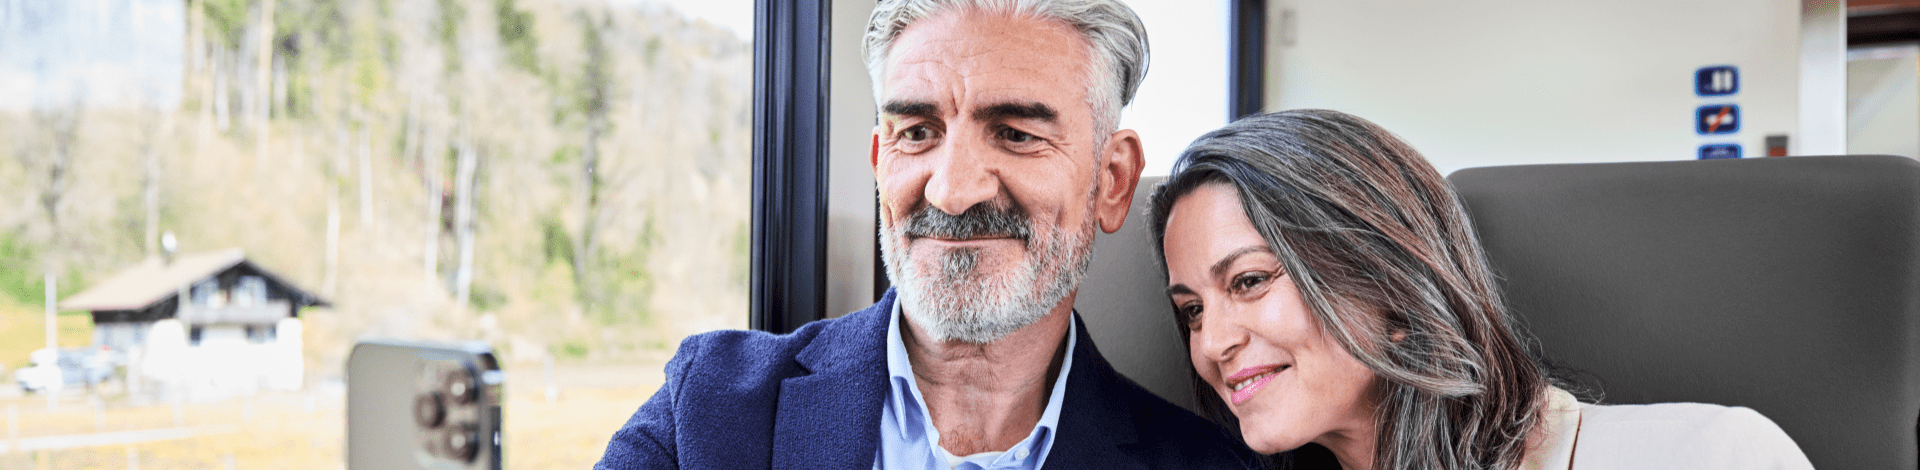 Frau und Mann sitzen in einem Zug und machen ein Selfie mit dem Smartphone.